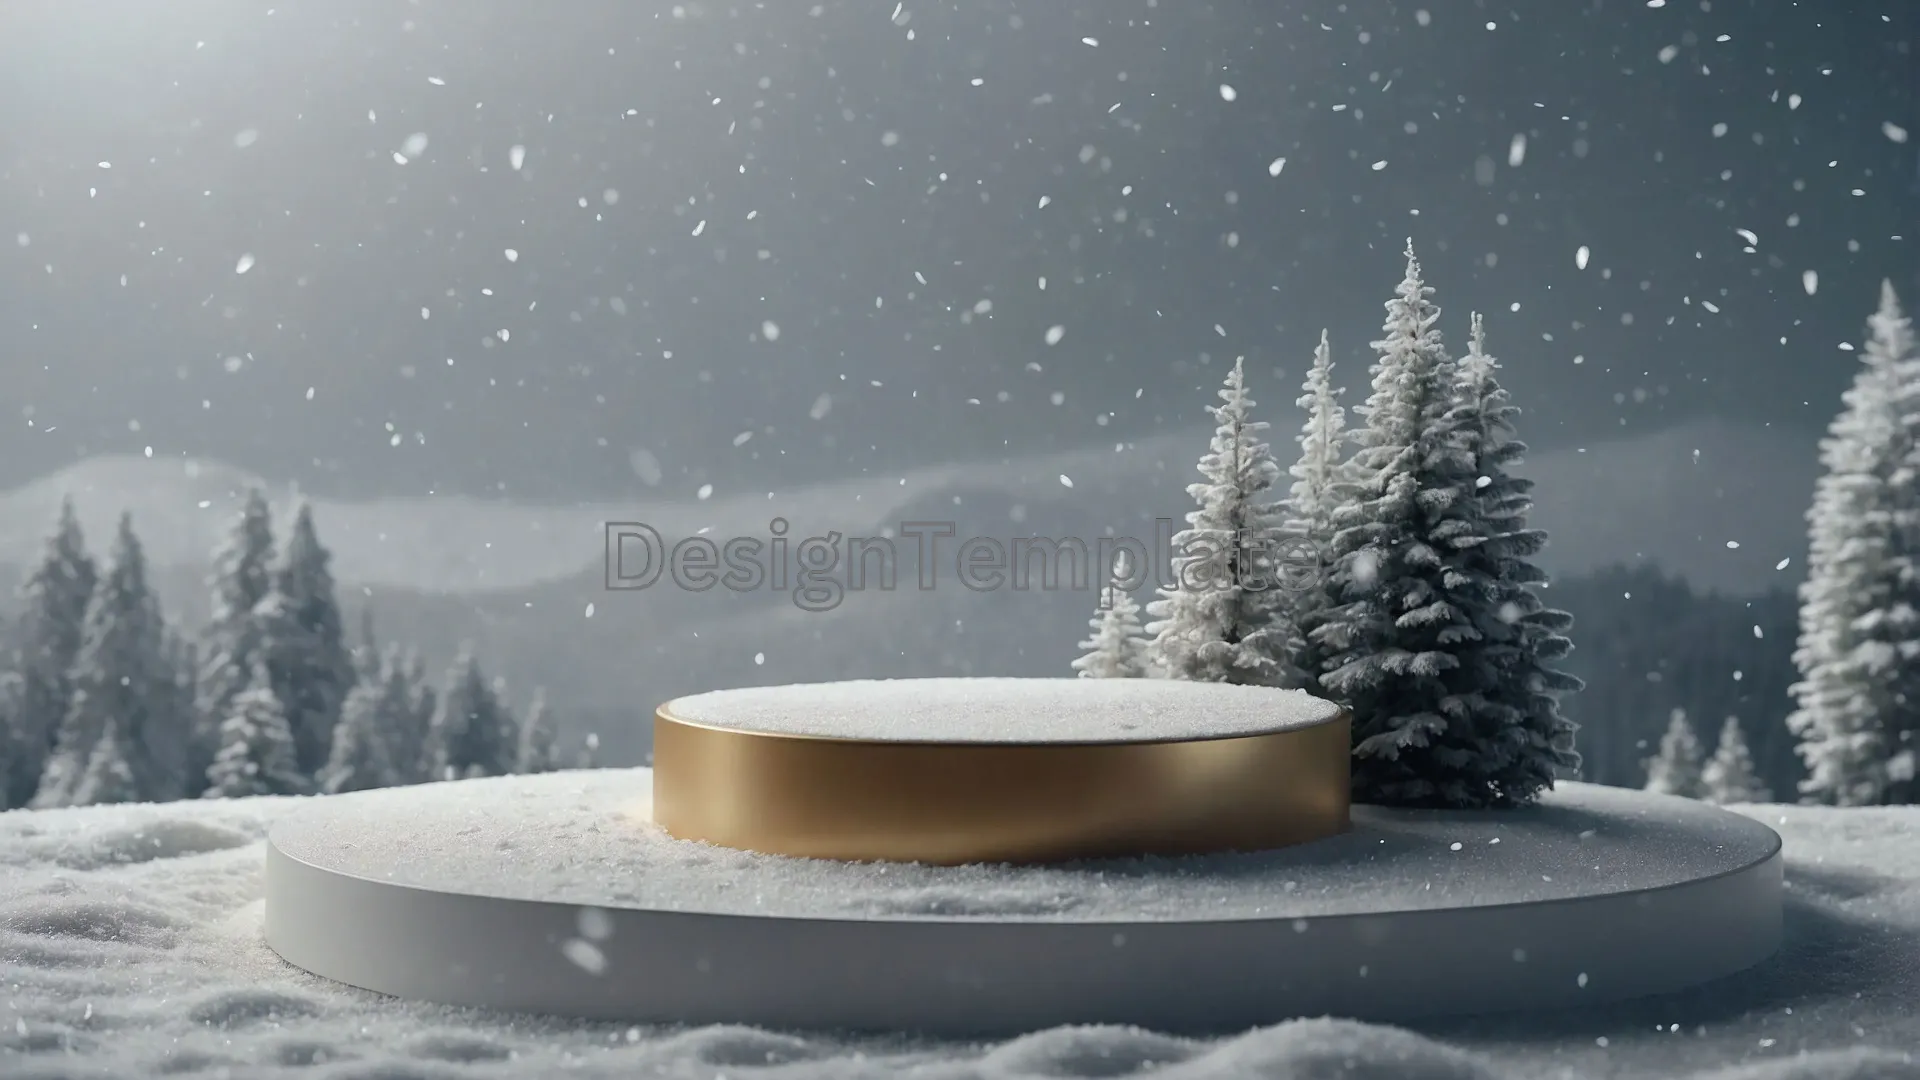 Icy Zen Platform Background Photo Fresh Snow View